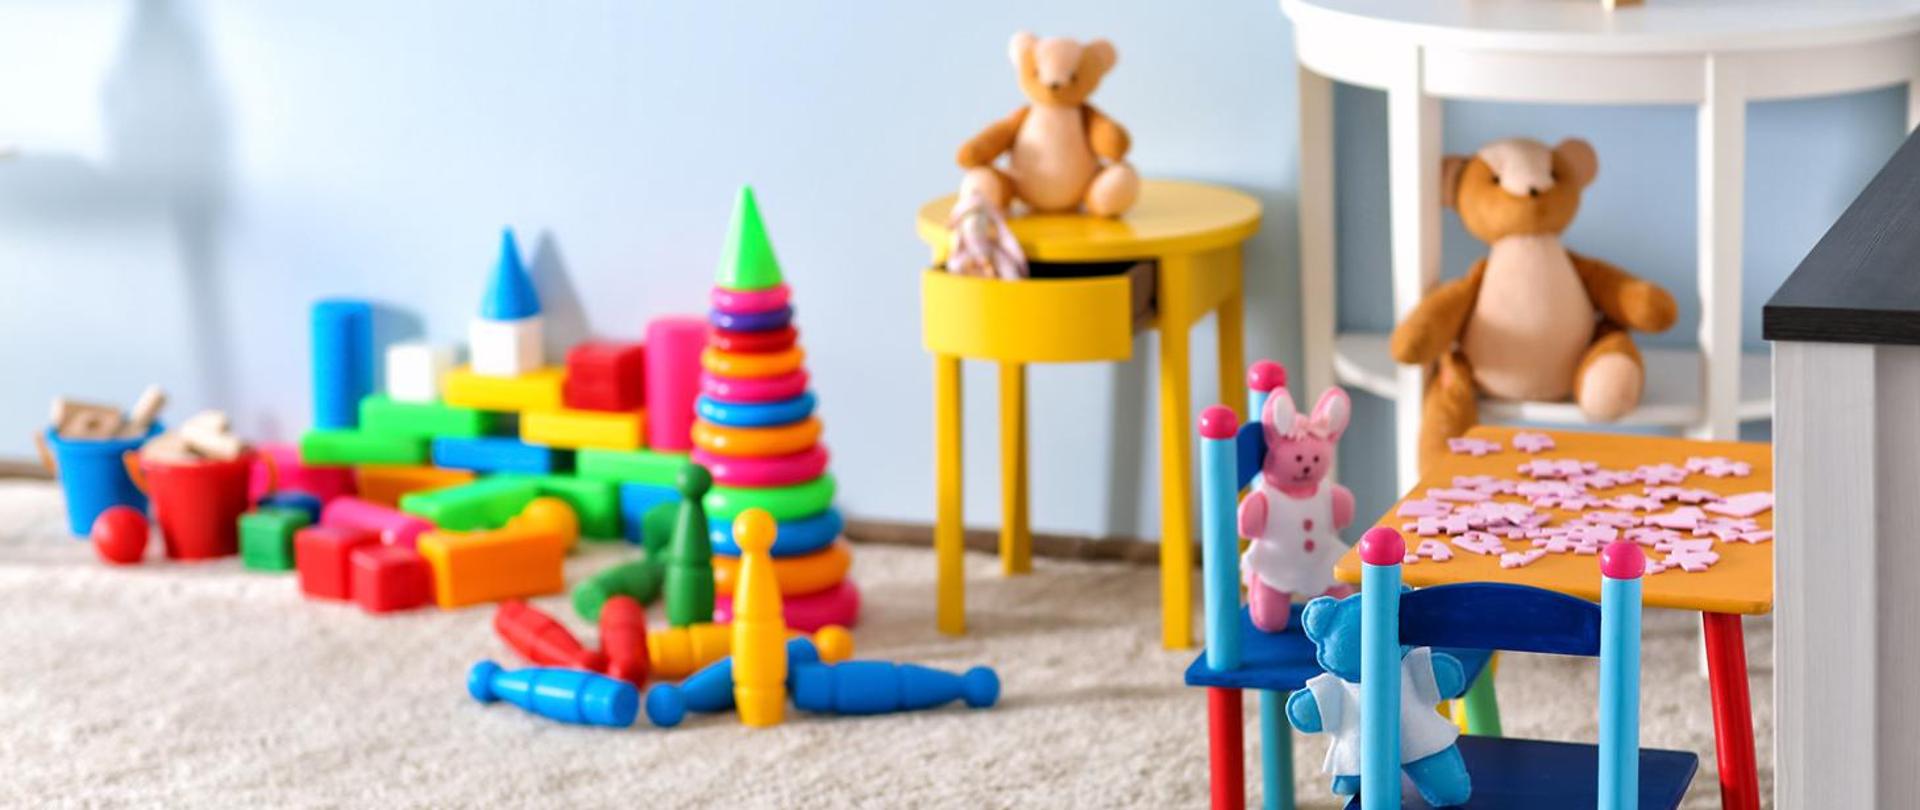 Pomieszczenie z zabawkami przeznaczone dla dzieci w wieku przedszkolnym